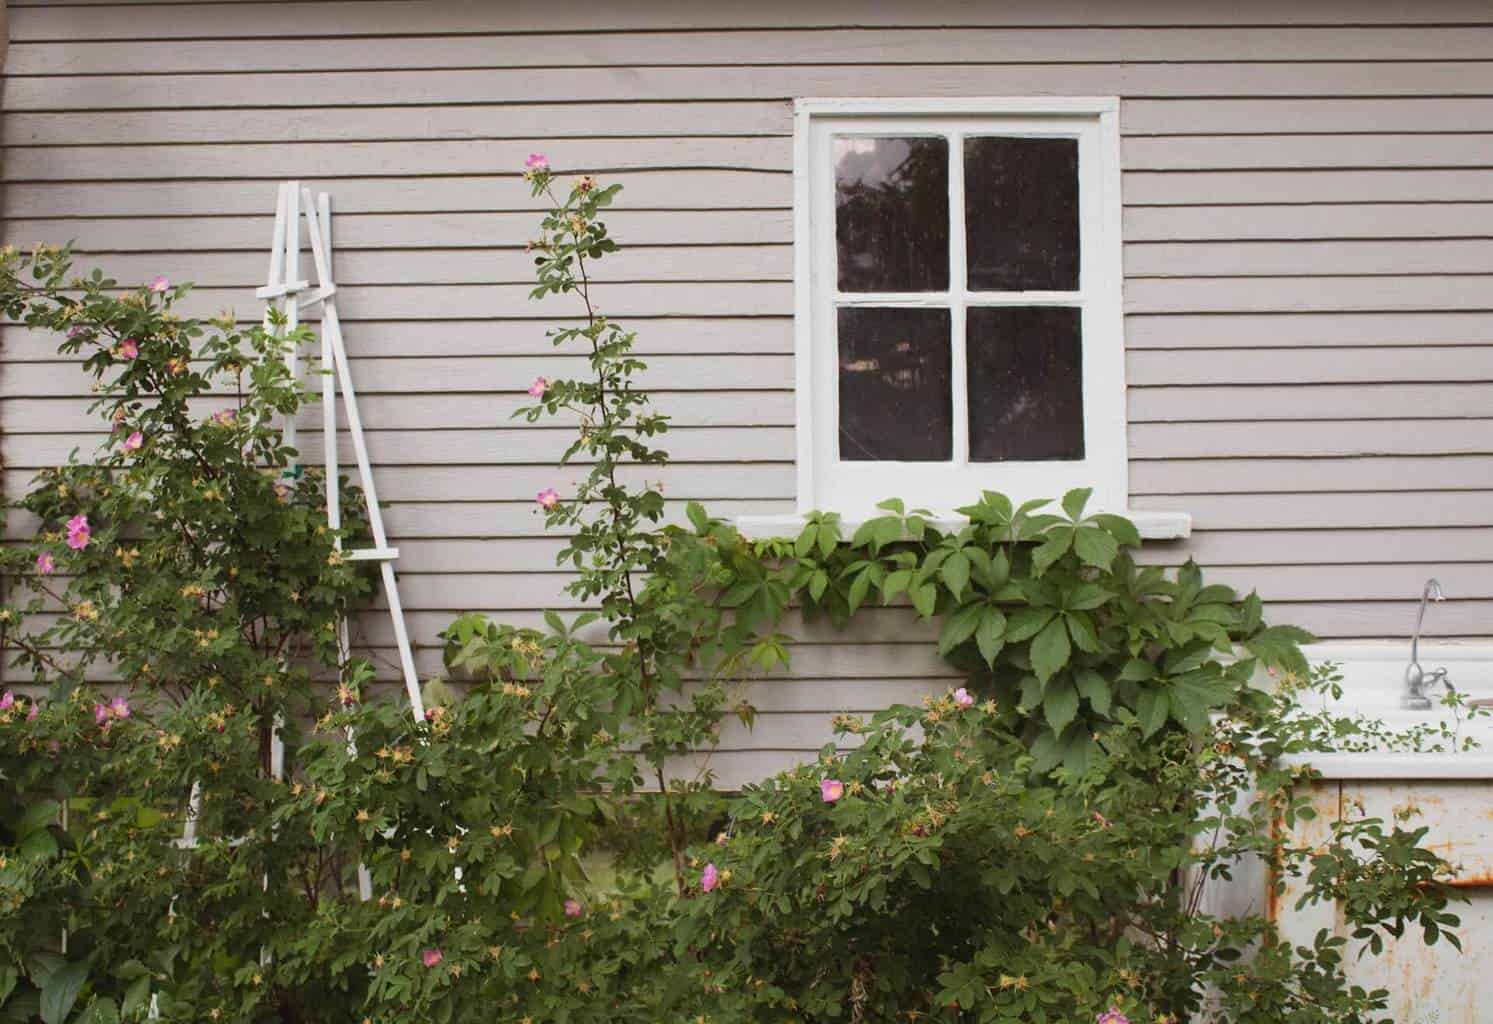 Rosas trepando por un enrejado apoyado contra una casa con revestimiento gris claro.  Las plantas están creciendo en la pared cerca de una ventana.